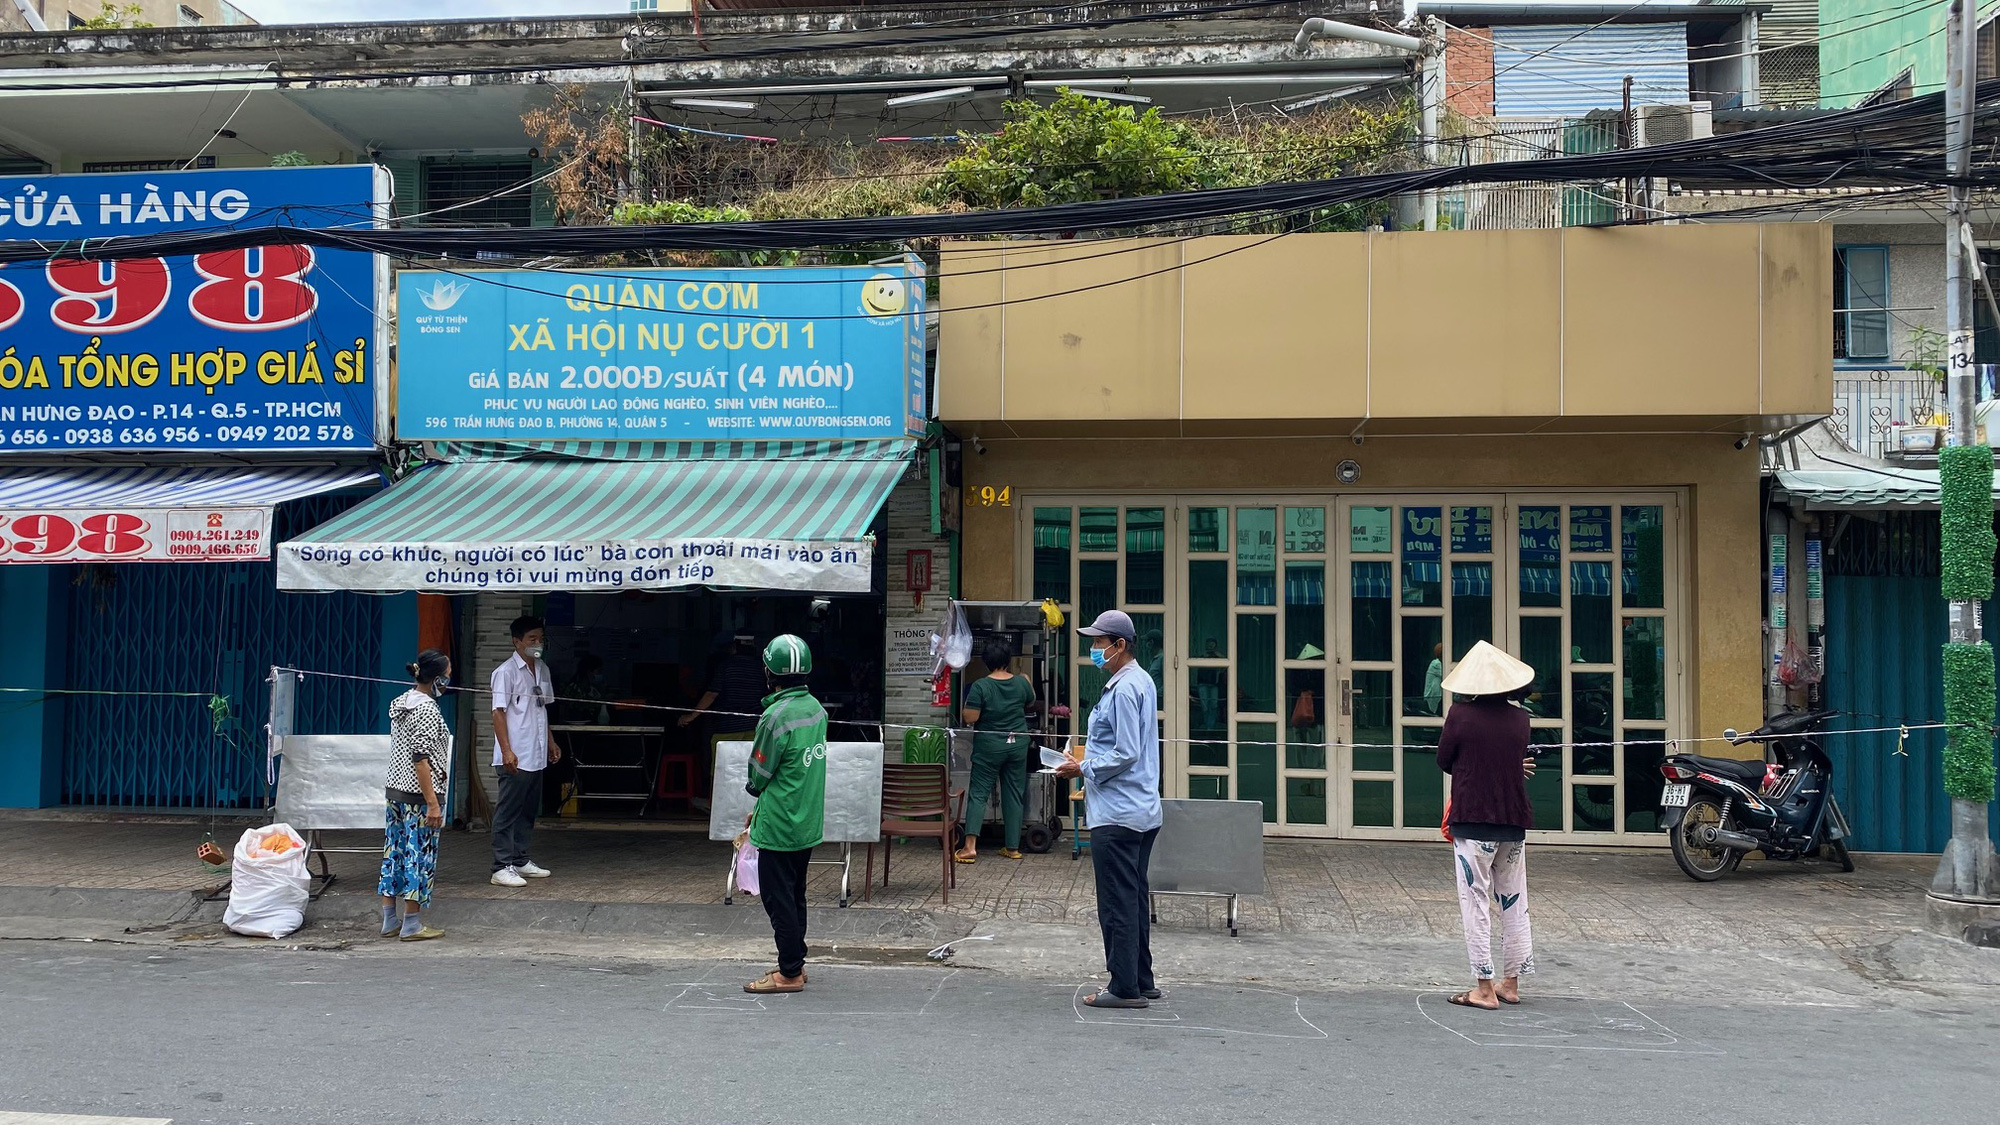 Đặc tả quán cơm Xã Hội Nụ Cười 1 trên đường Trần Hưng Đạo, quận 5 ngày đầu giãn cách - Ảnh 3.